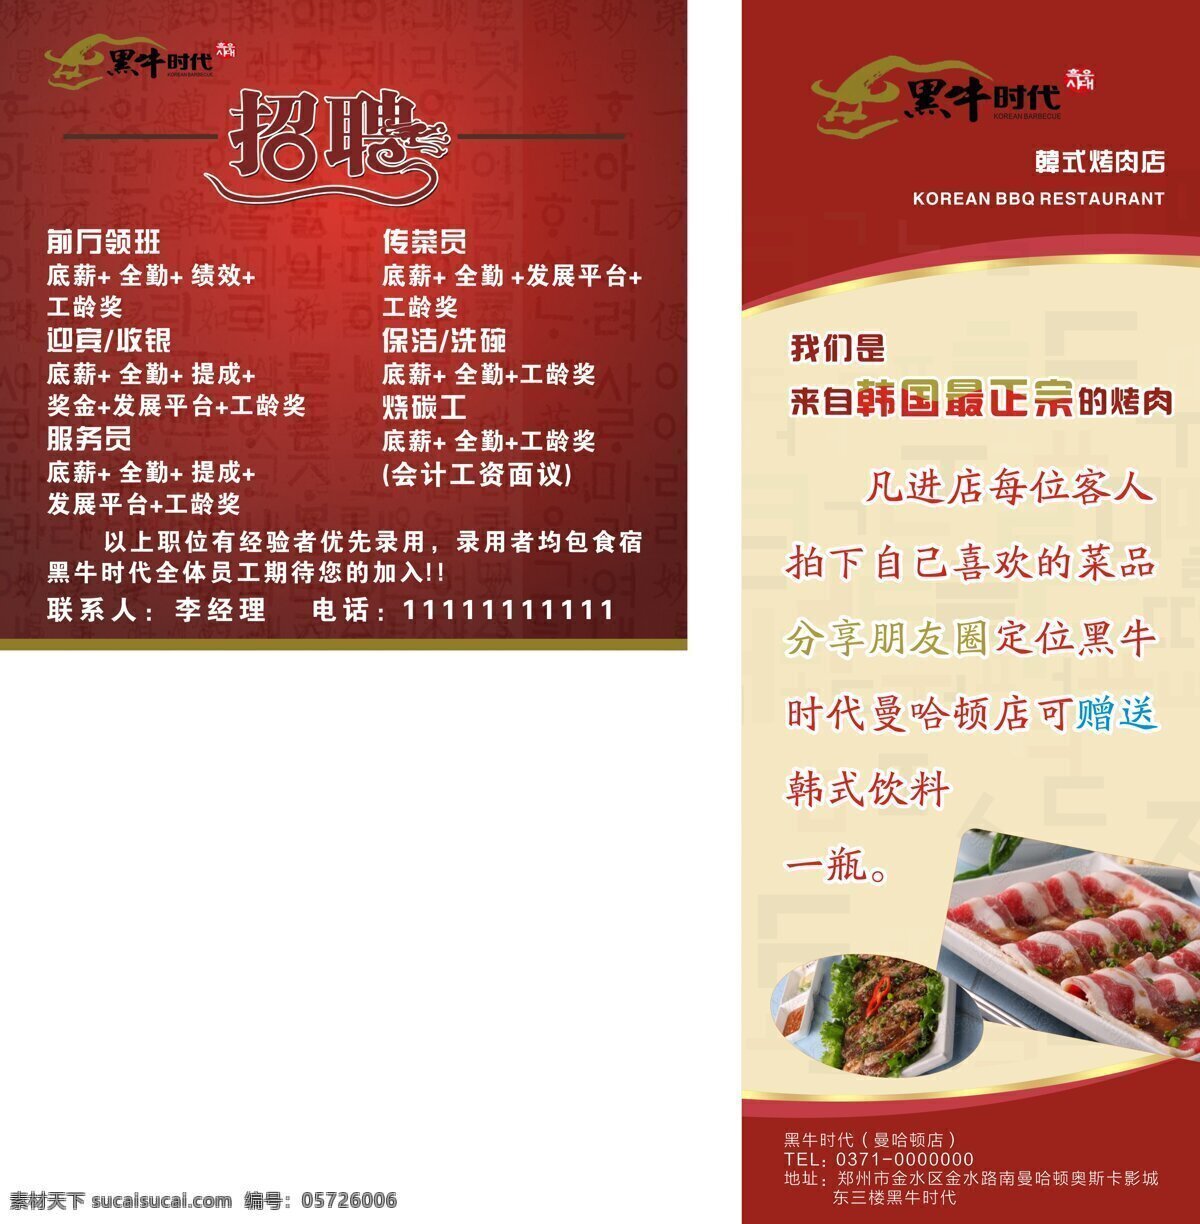 cdr矢量图 红色背景 活动展架 图文设计 展架设计 招聘海报 黑牛时代 韩式餐厅 韩式烤肉 韩式元素 原创设计 原创海报